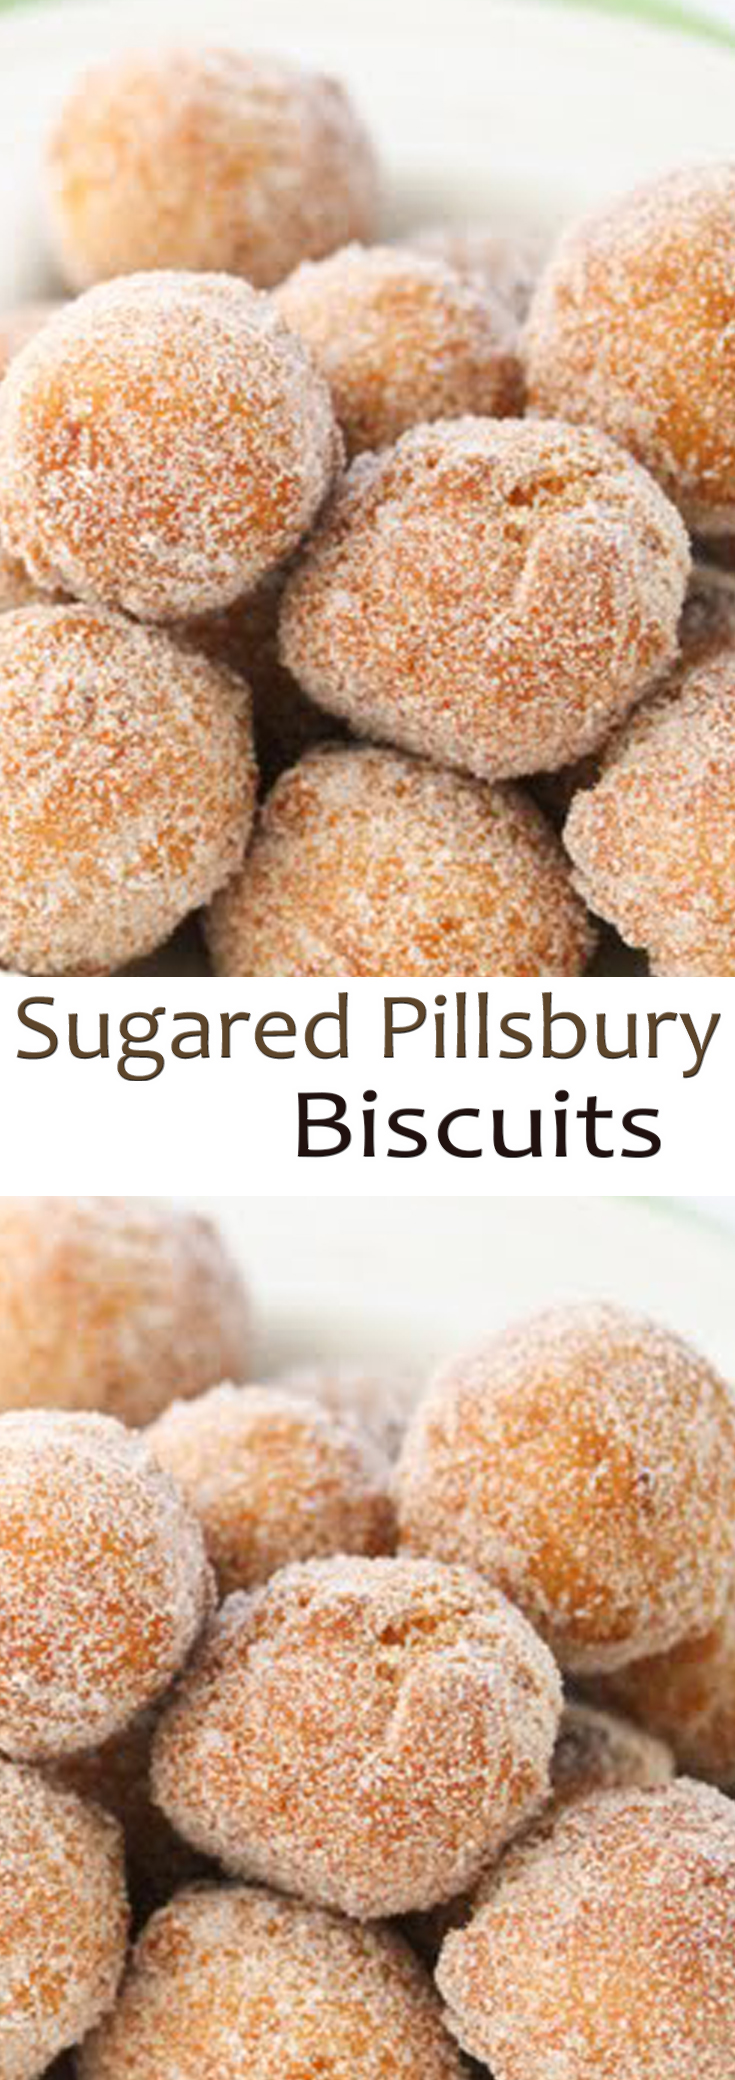 Sugared Pillsbury Biscuits